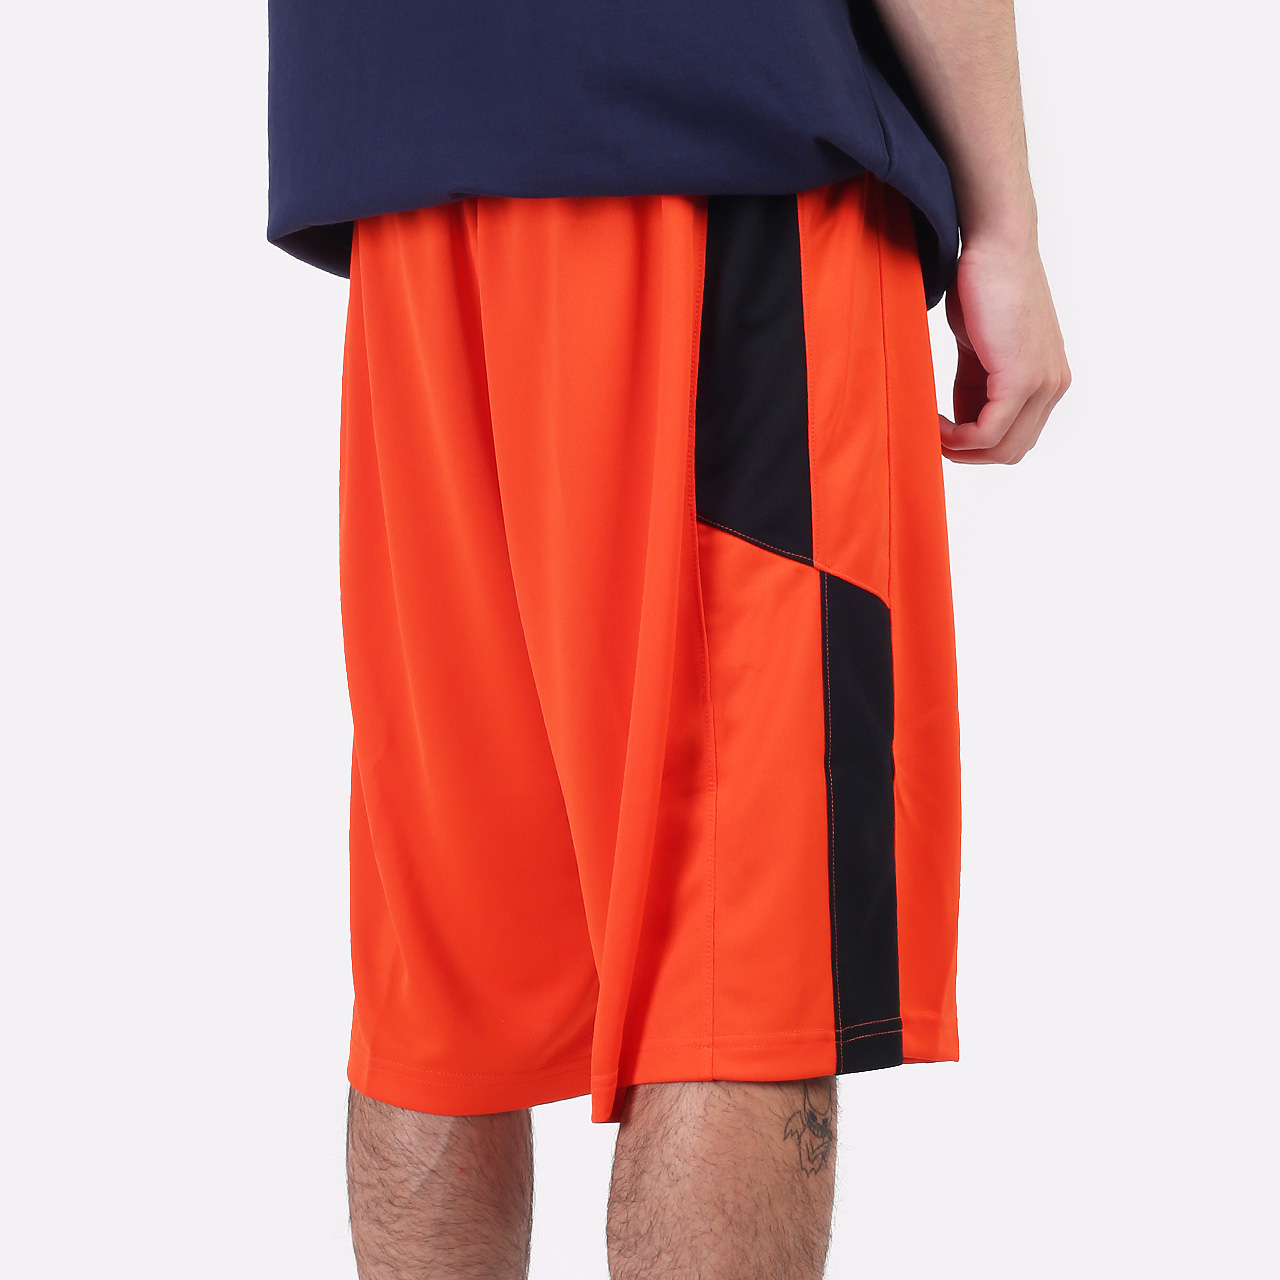 мужские оранжевые шорты Nike Swoosh 802326-891 - цена, описание, фото 4